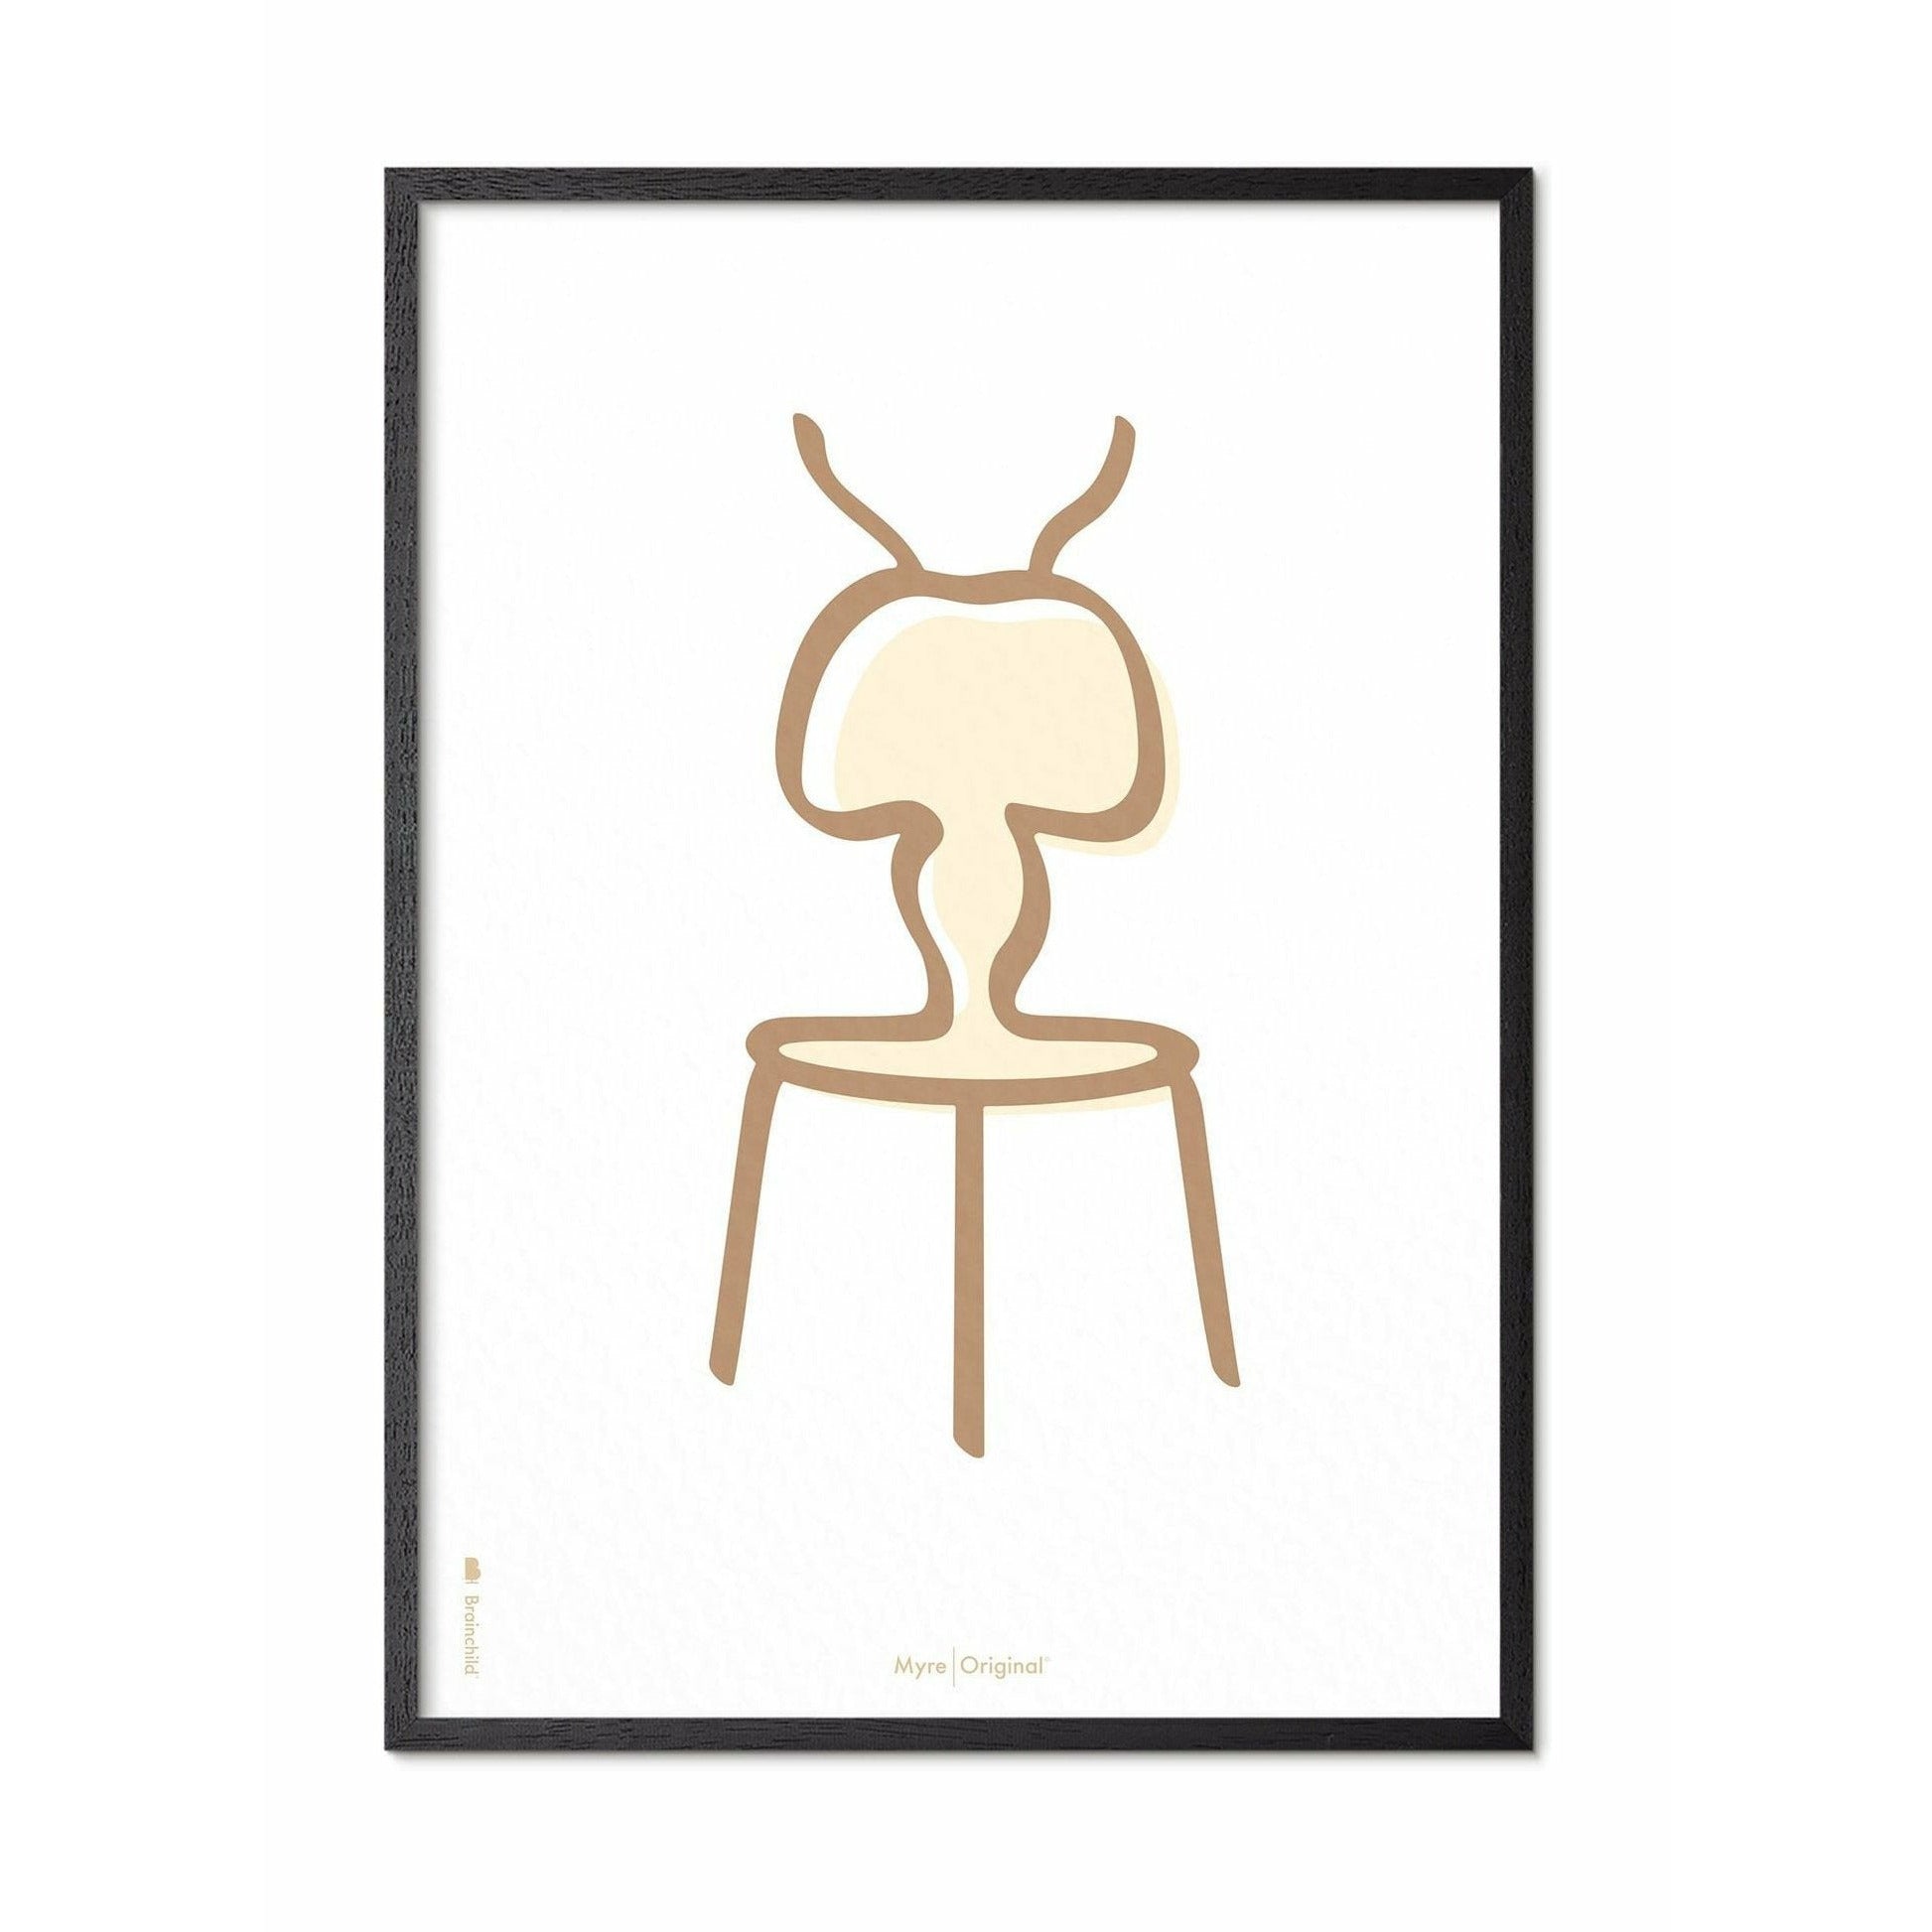 Pomysły plakat linii mrówek, rama w czarnym lakierowanym drewnie 50x70 cm, białe tło